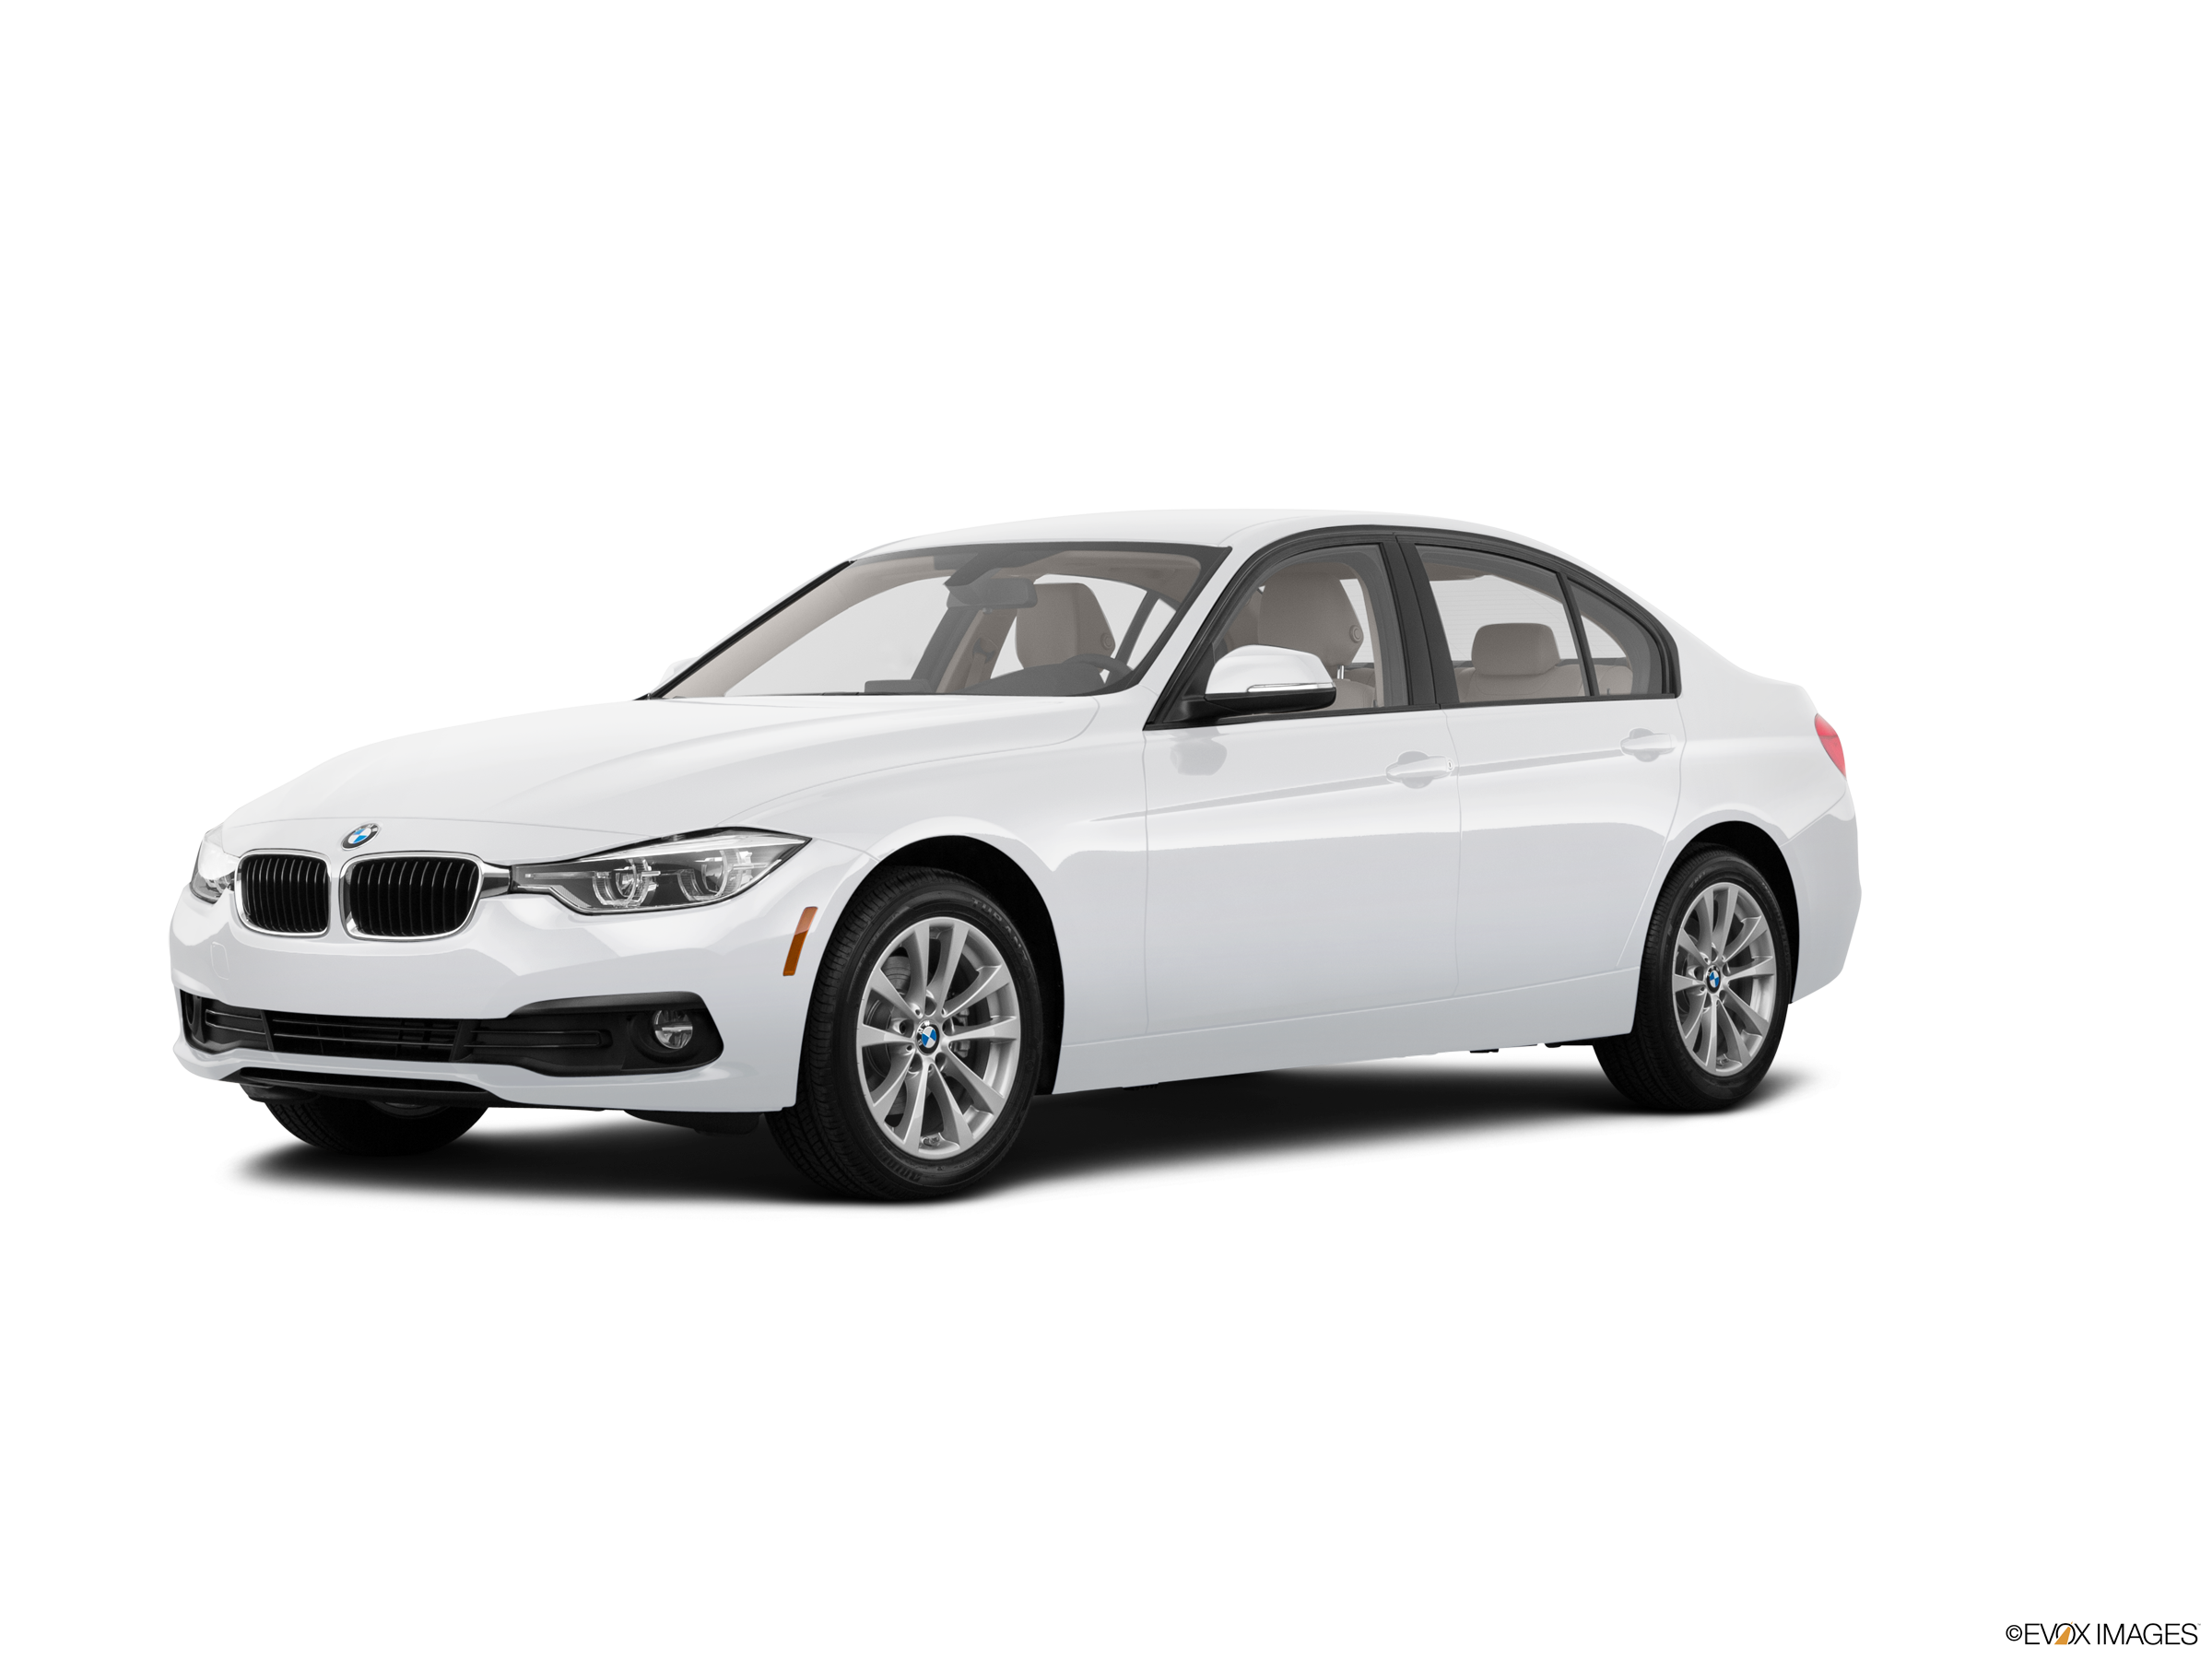 Đánh giá xe BMW 320i 2018 về thiết kế vận hành và giá bán mới nhất